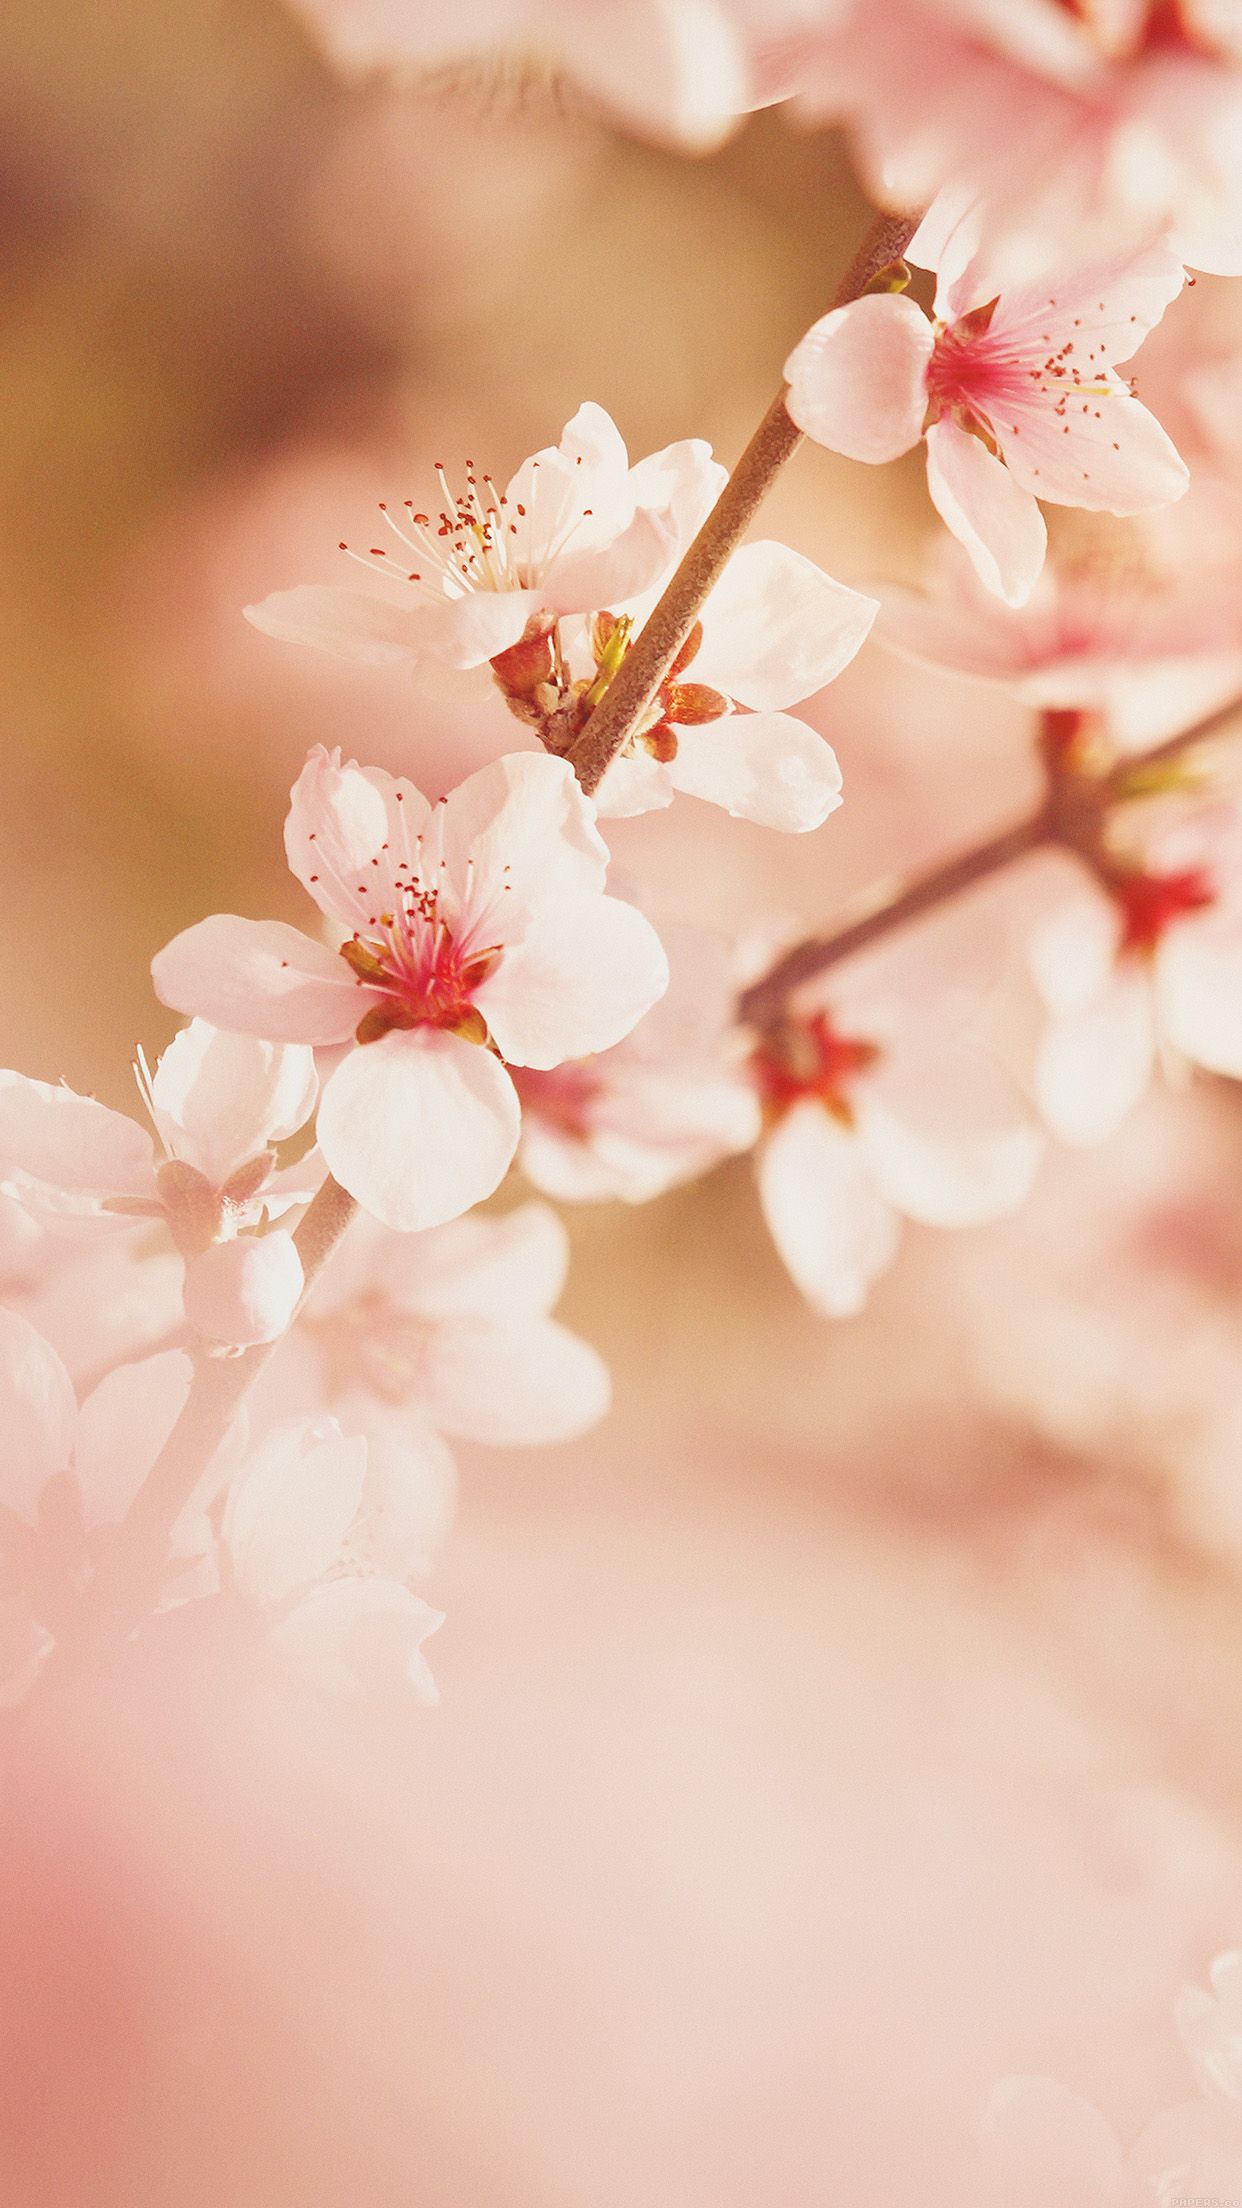 iPhone7 wallpaper. spring flower sullysully cherry blossom nature